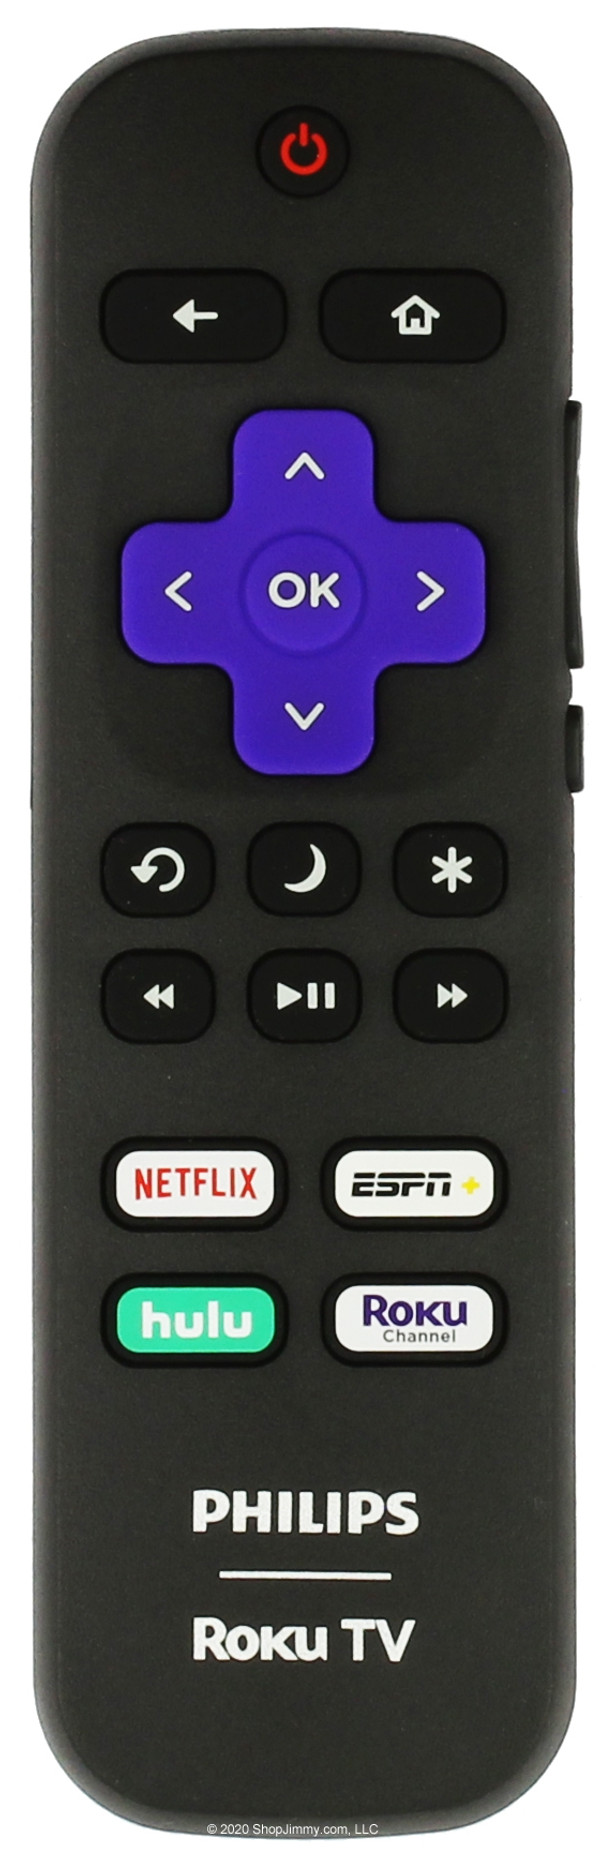 Philips 06-518W21-PH05XS Roku Remote Control w/ Netflix ESPN NULU ROKU--OPEN BAG